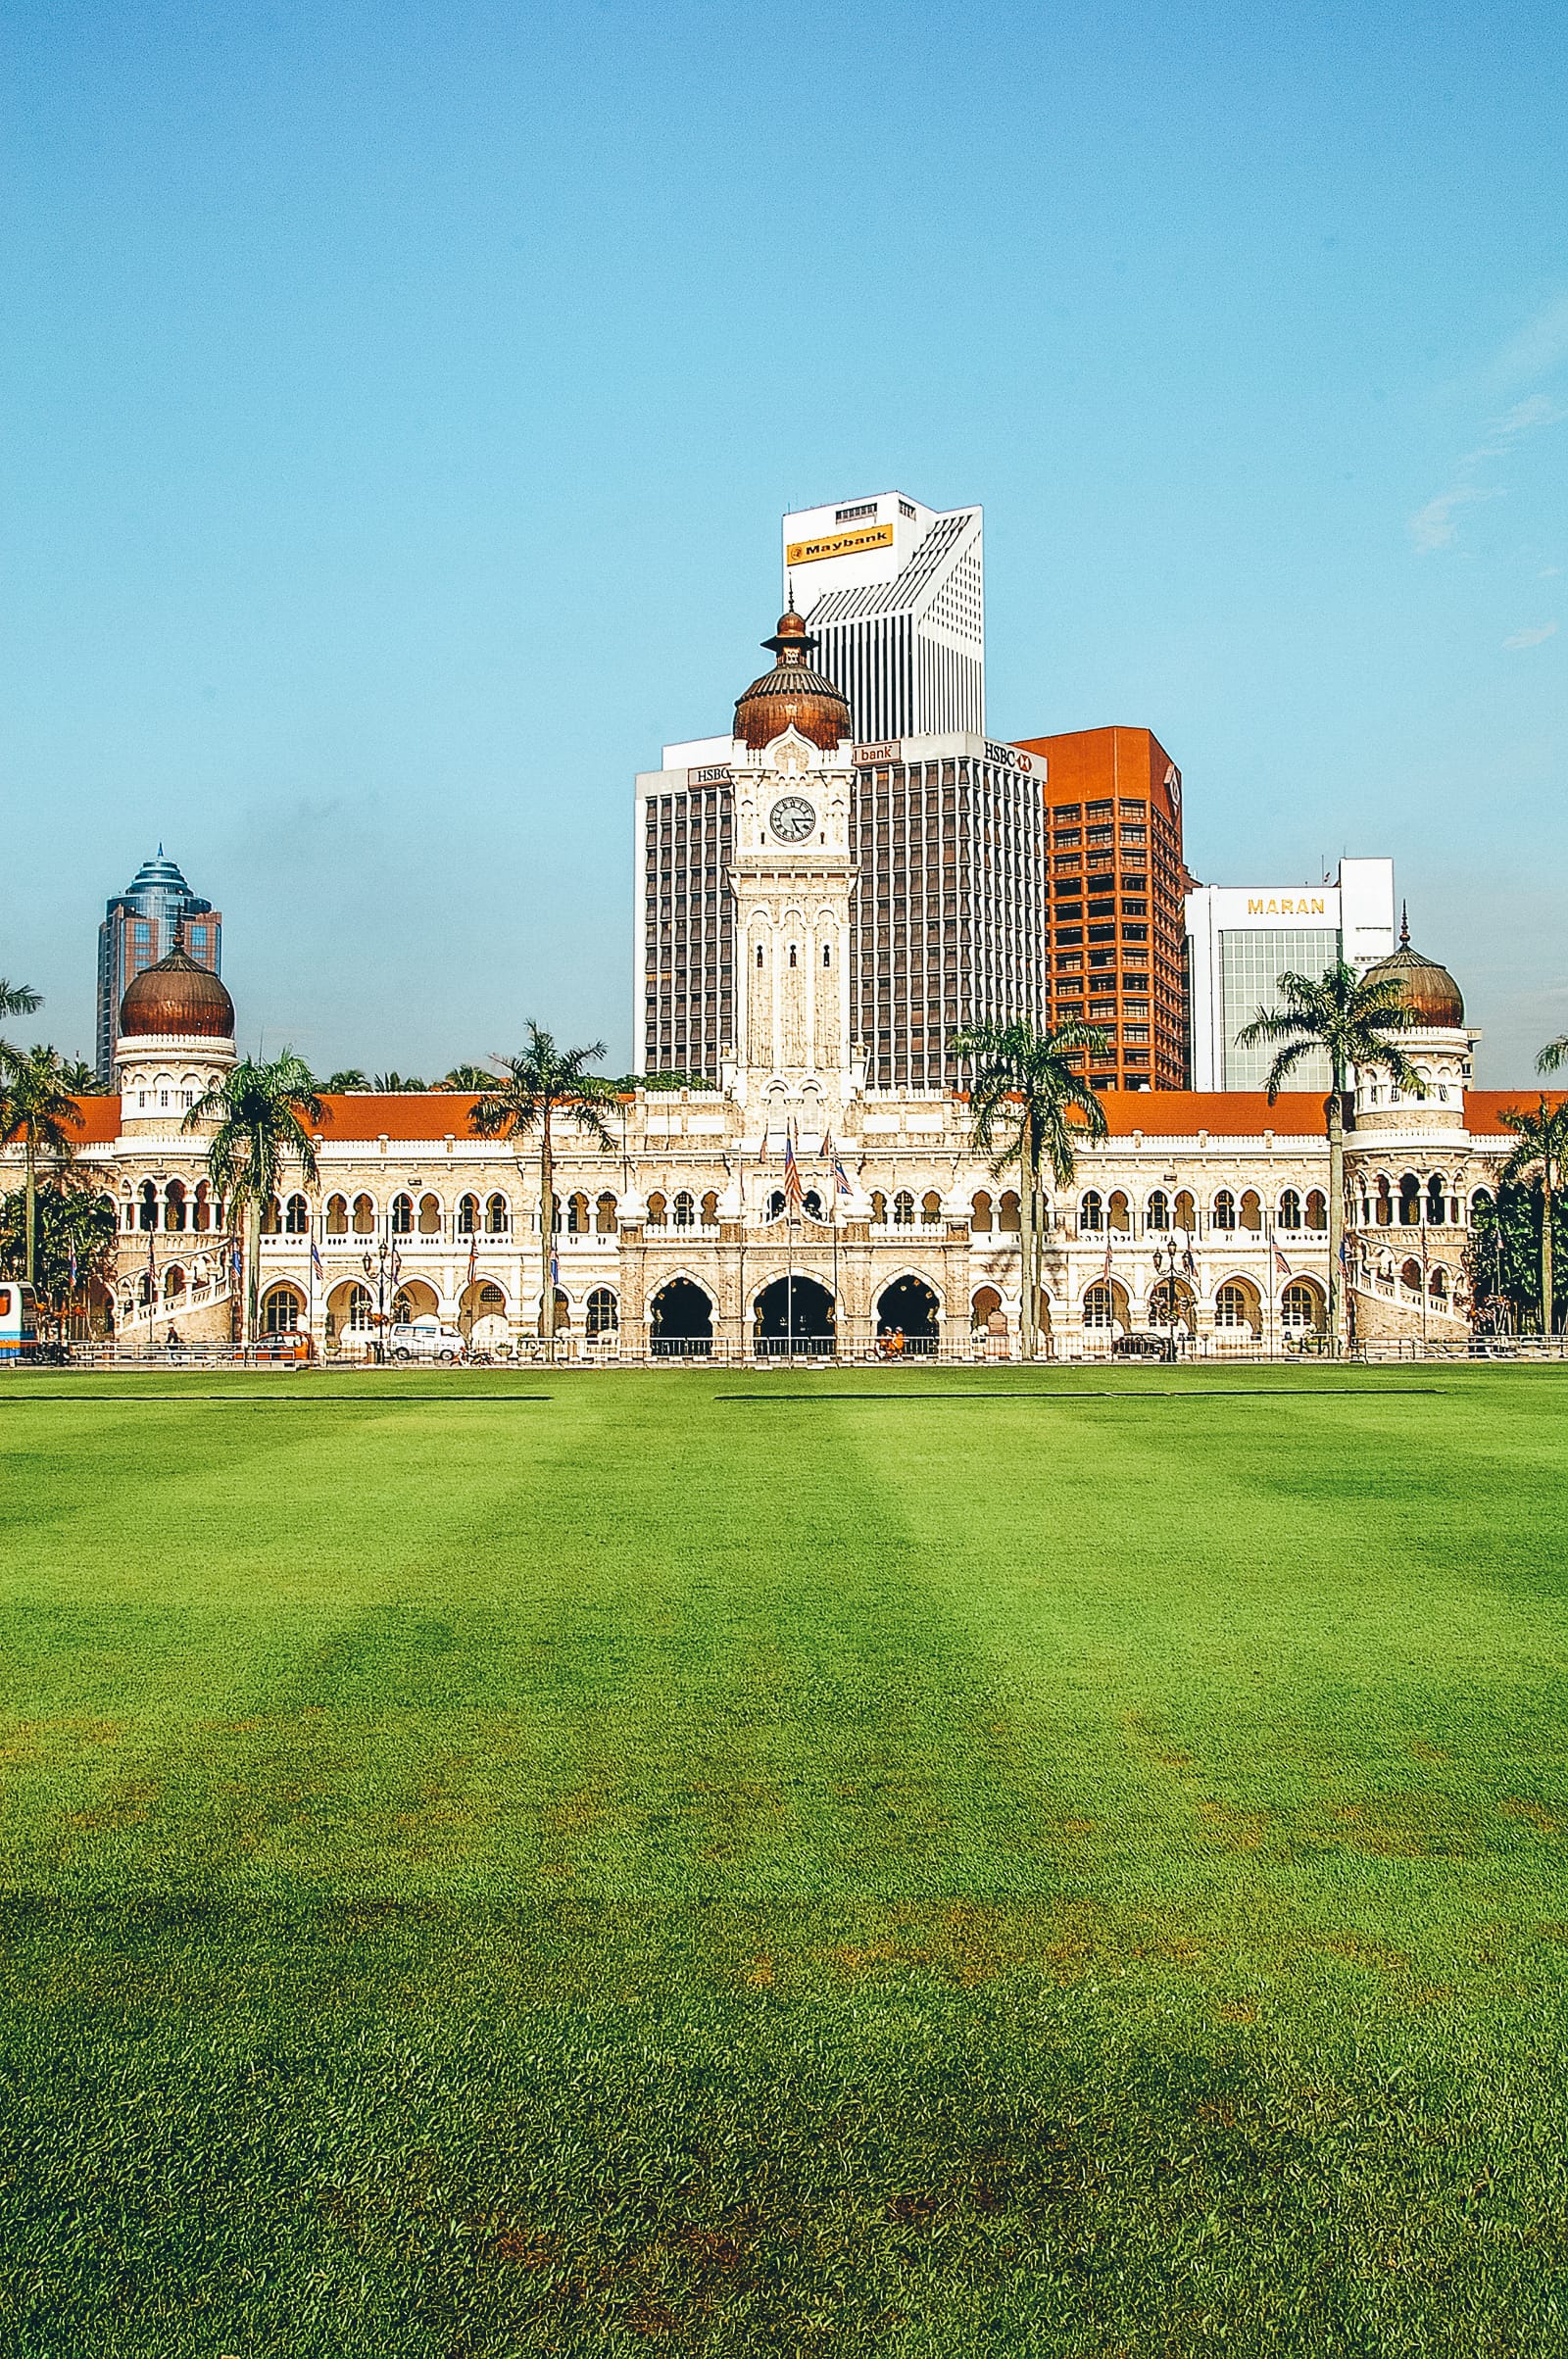 Tòa nhà Sultan Abdul Samad tinh tế - nơi bản Tuyên ngôn Độc lập của Malaysia được ký vào năm 1957.